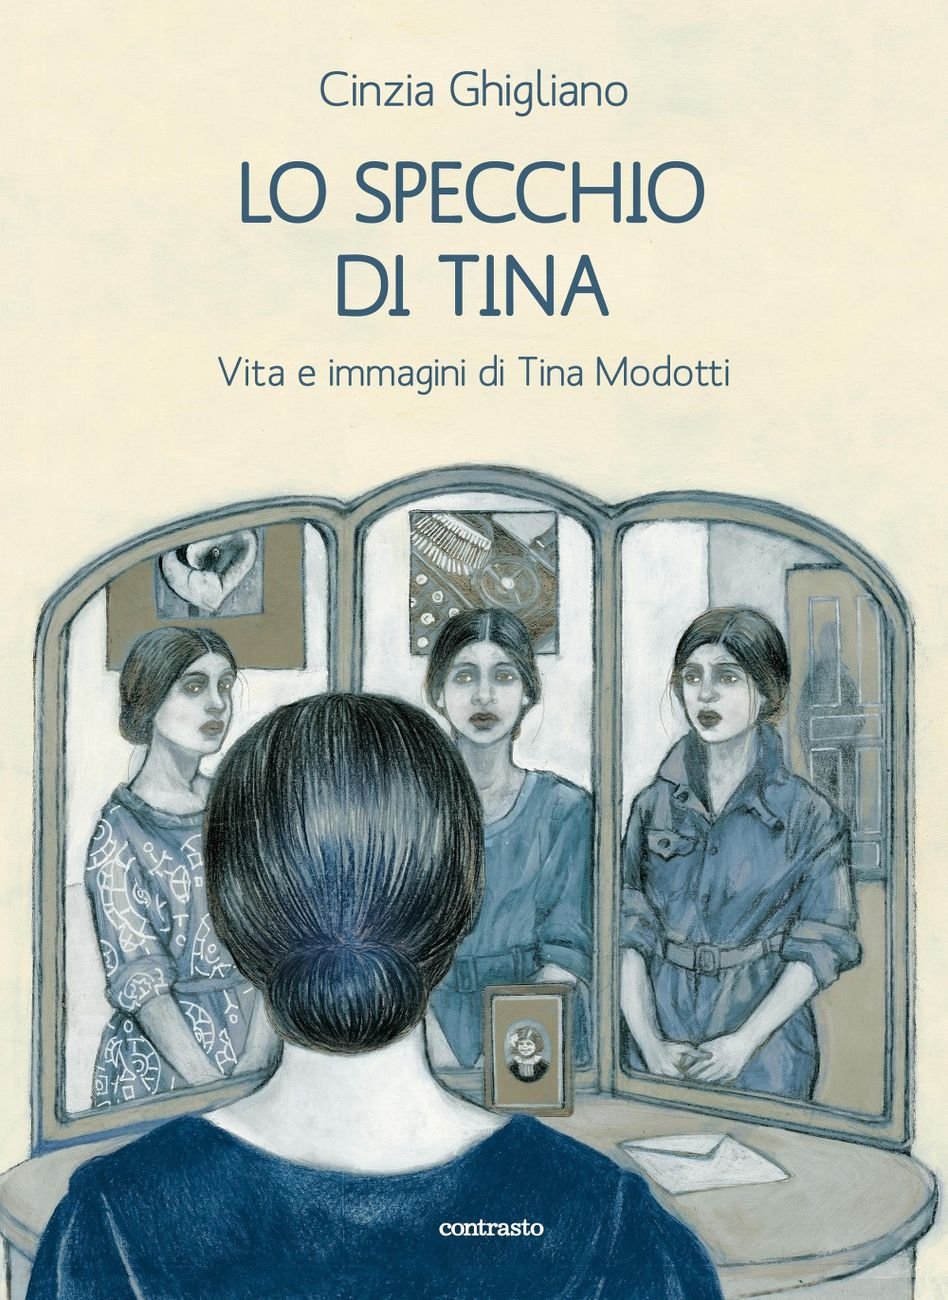 Cinzia Ghigliano – Lo specchio di Tina (Contrastobooks, Roma 2019)